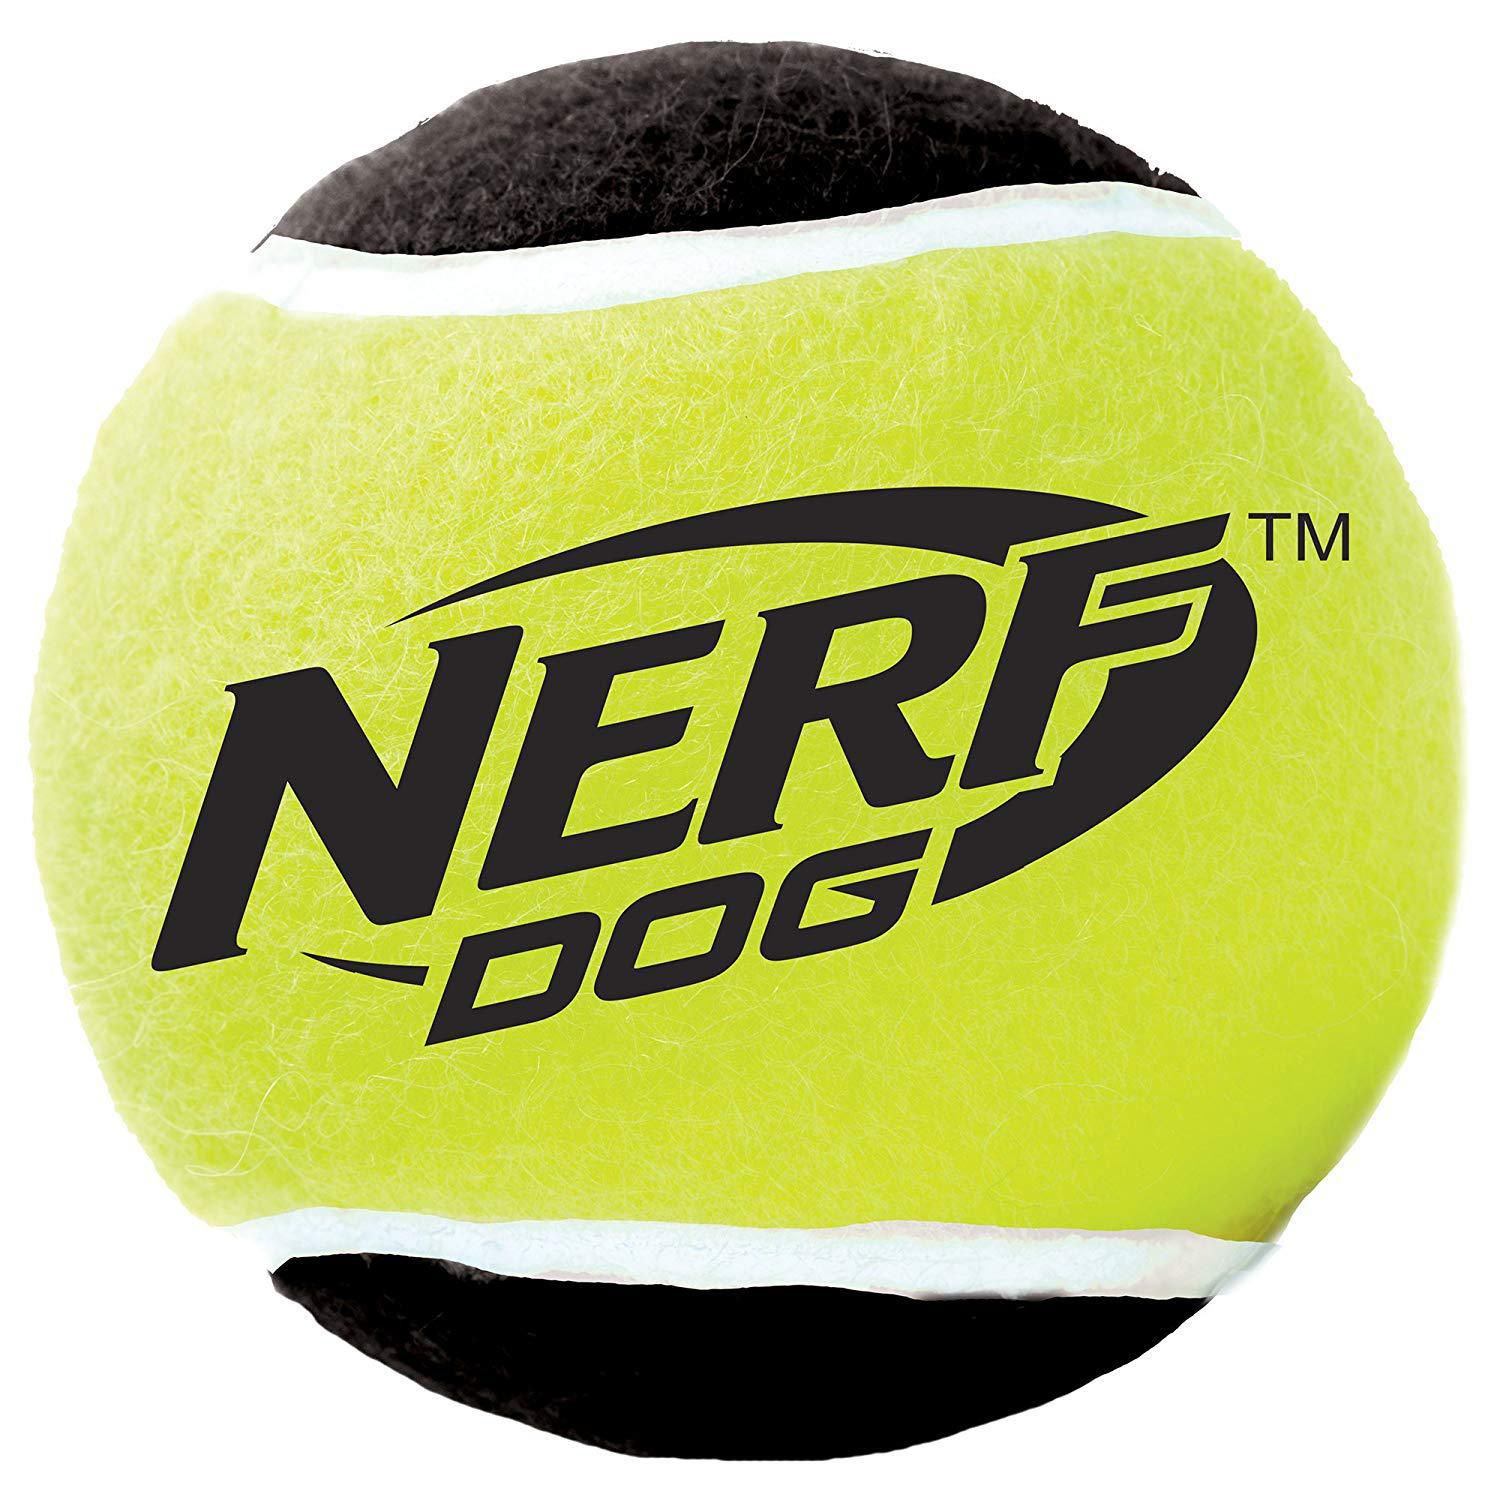 Balles de tennis pour chien Vadigran - disponible 3 tailles